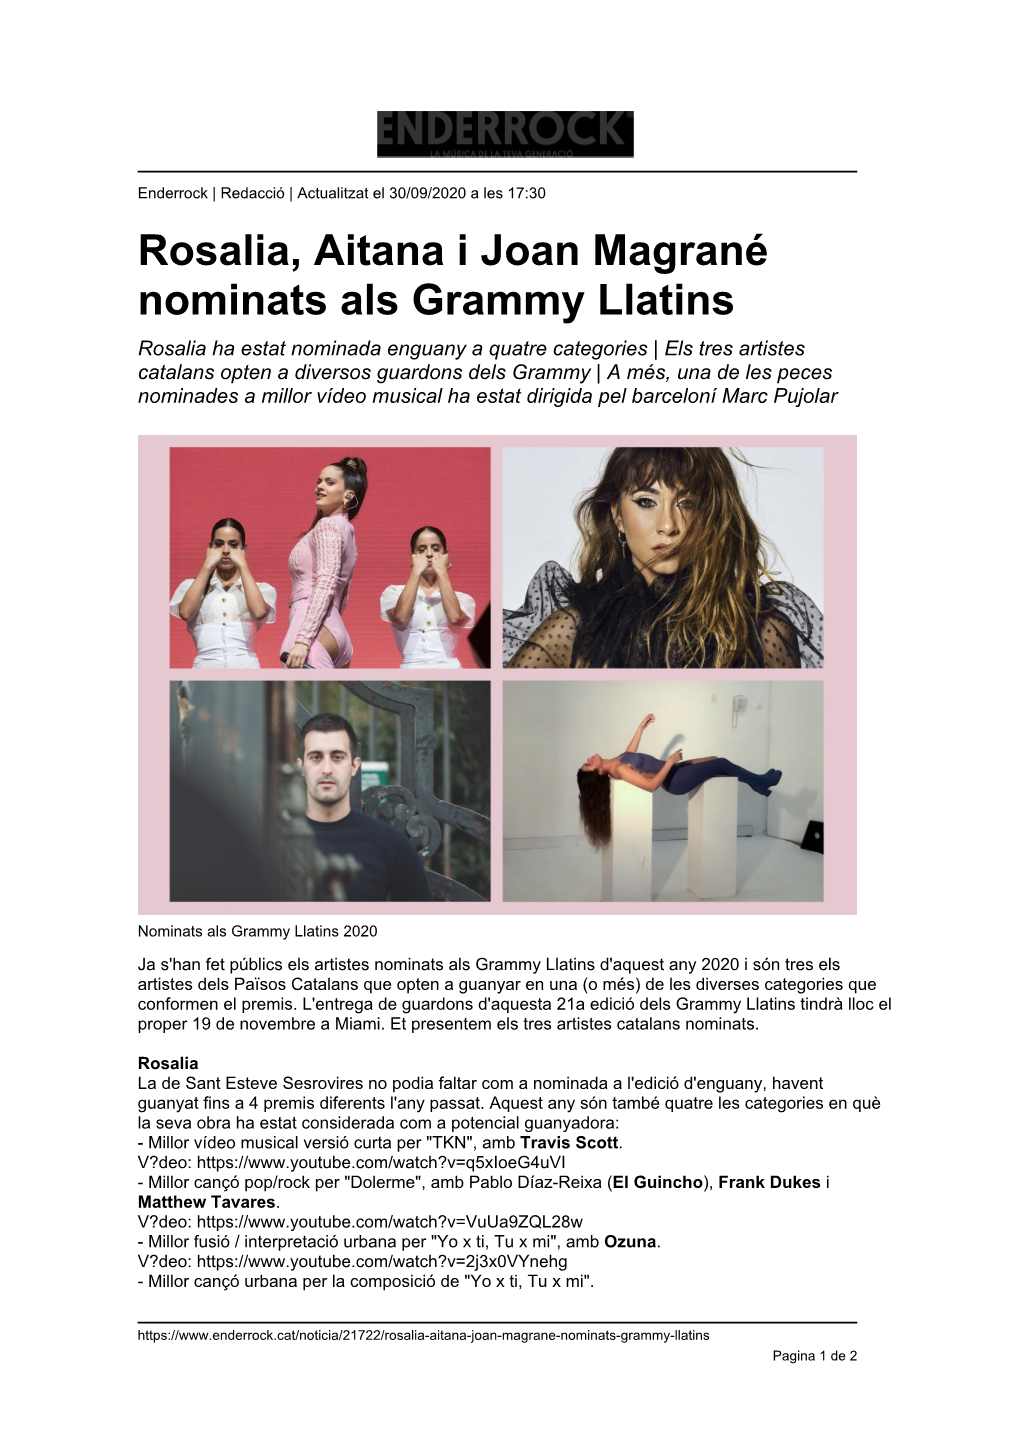 Rosalia, Aitana I Joan Magrané Nominats Als Grammy Llatins